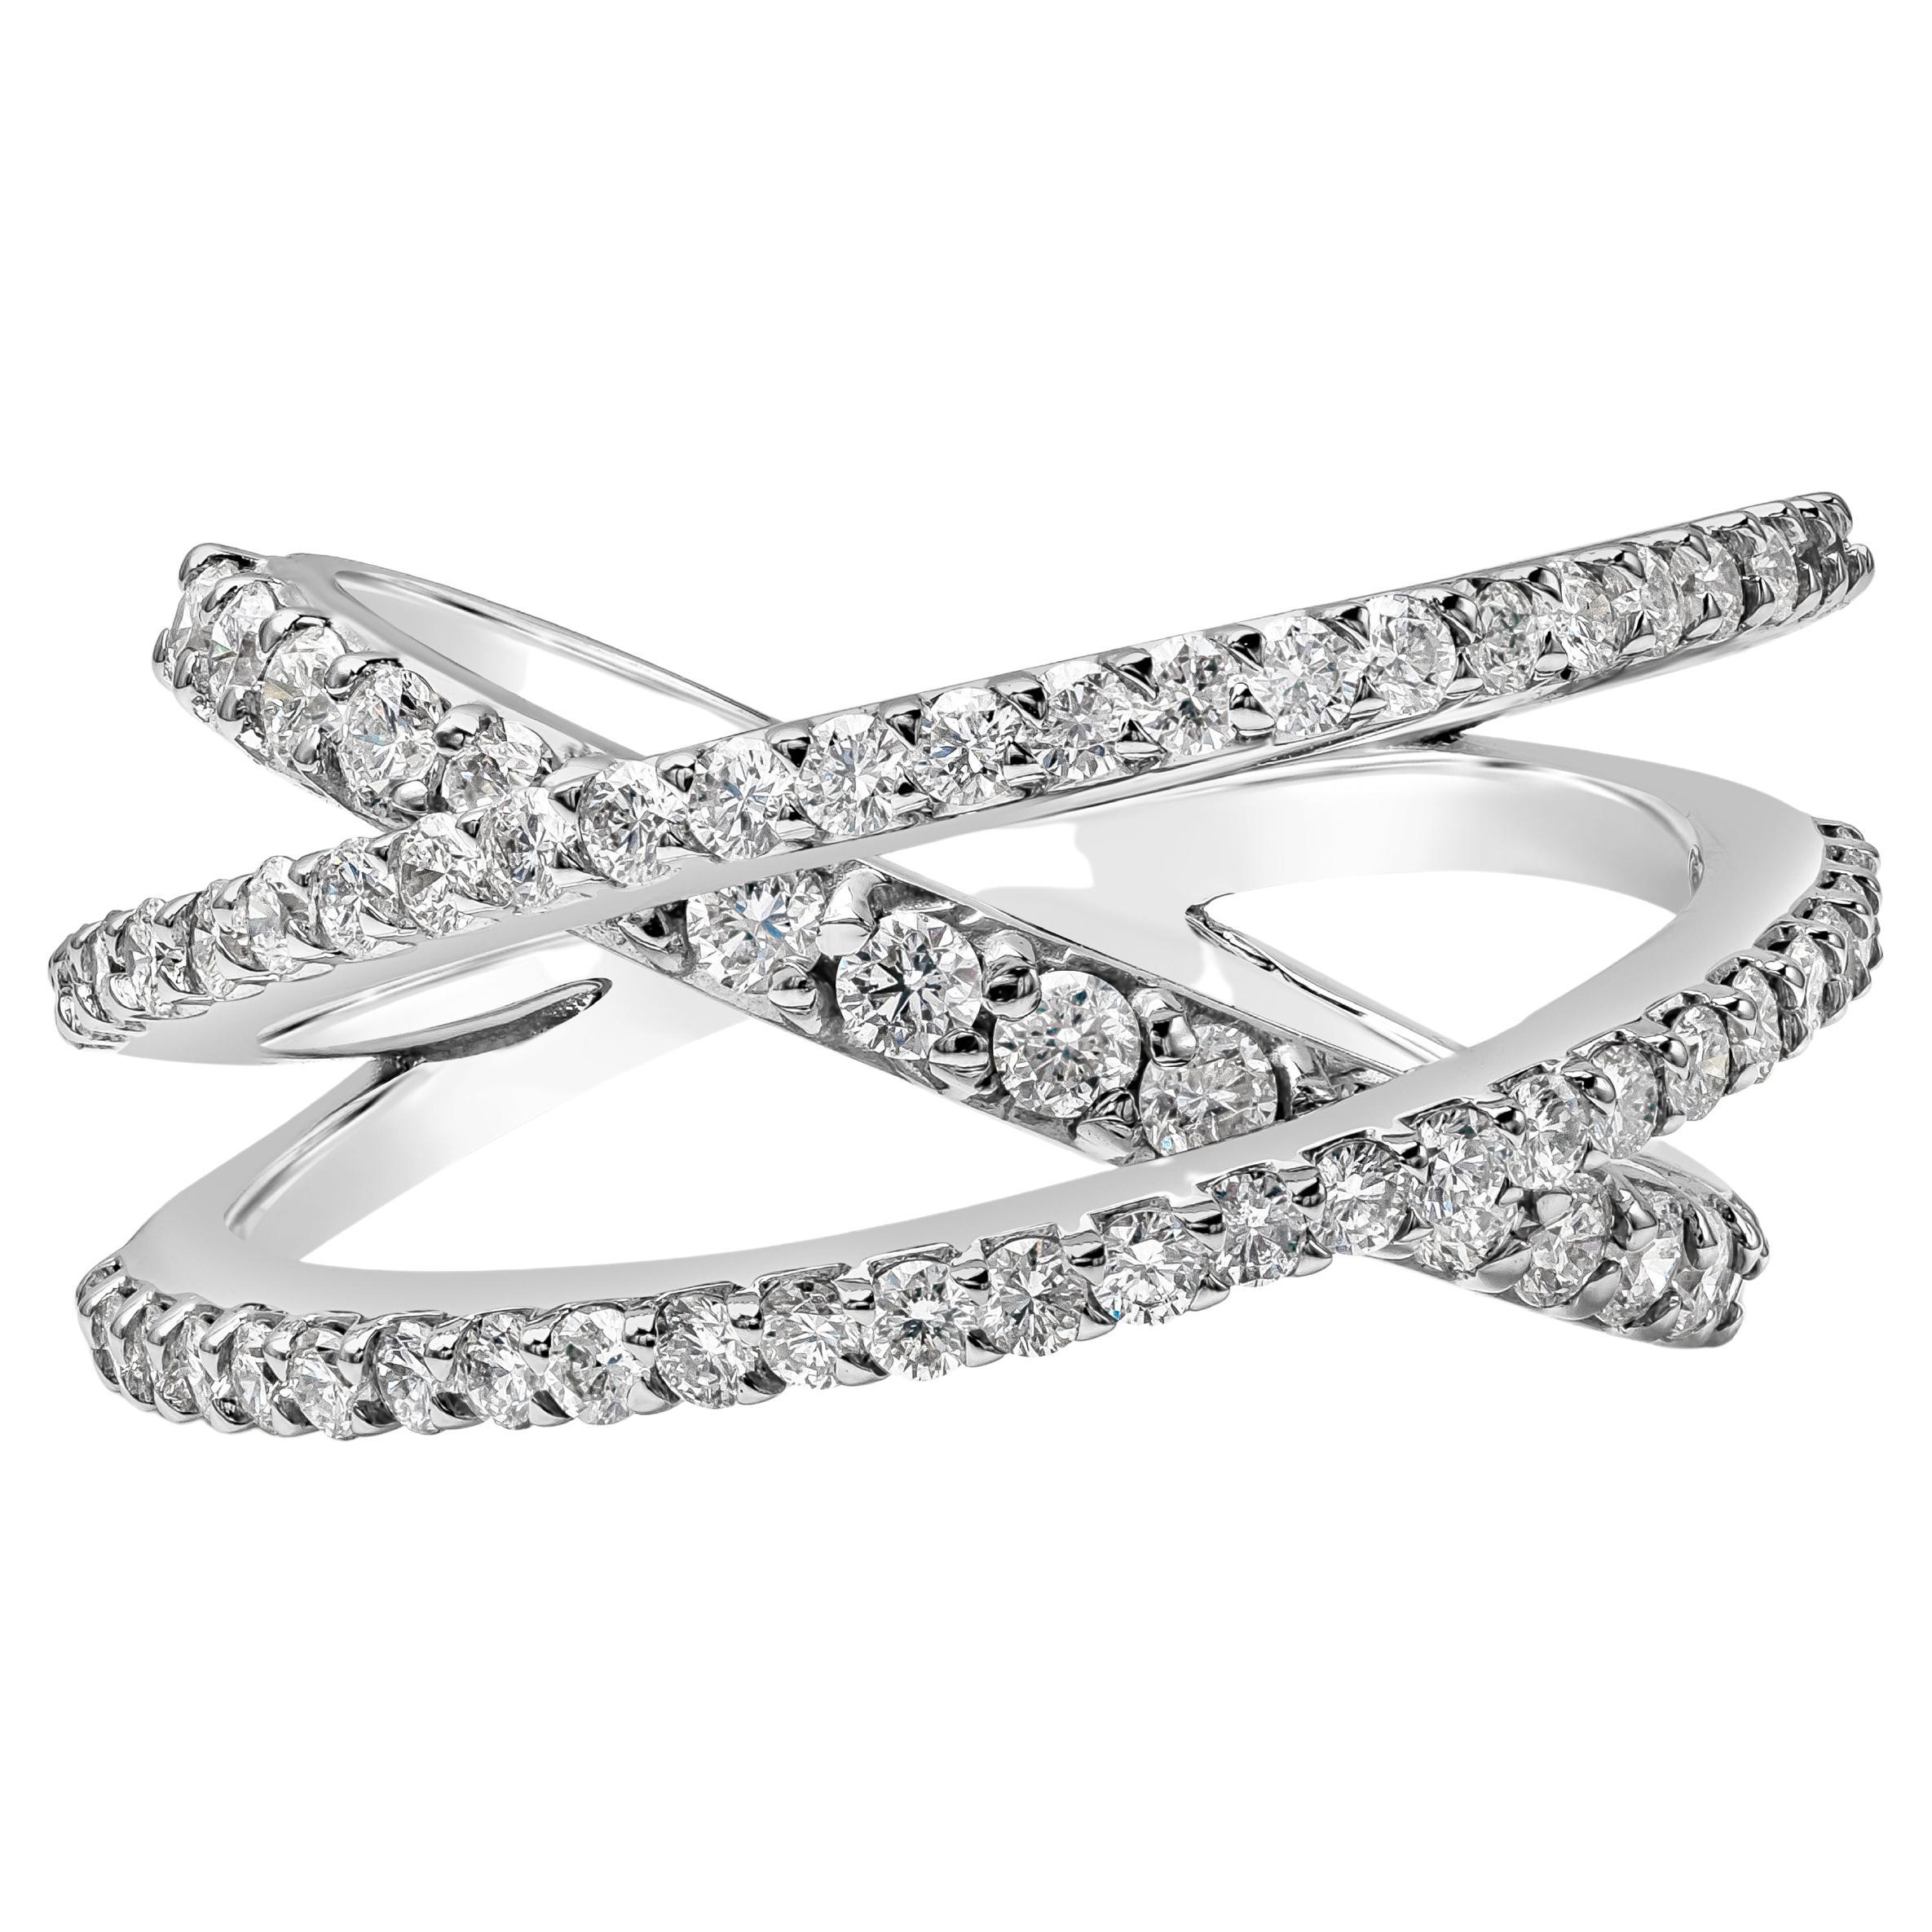 Roman Malakov 1.24 Carat Round Diamond Intertwined Fashion Ring